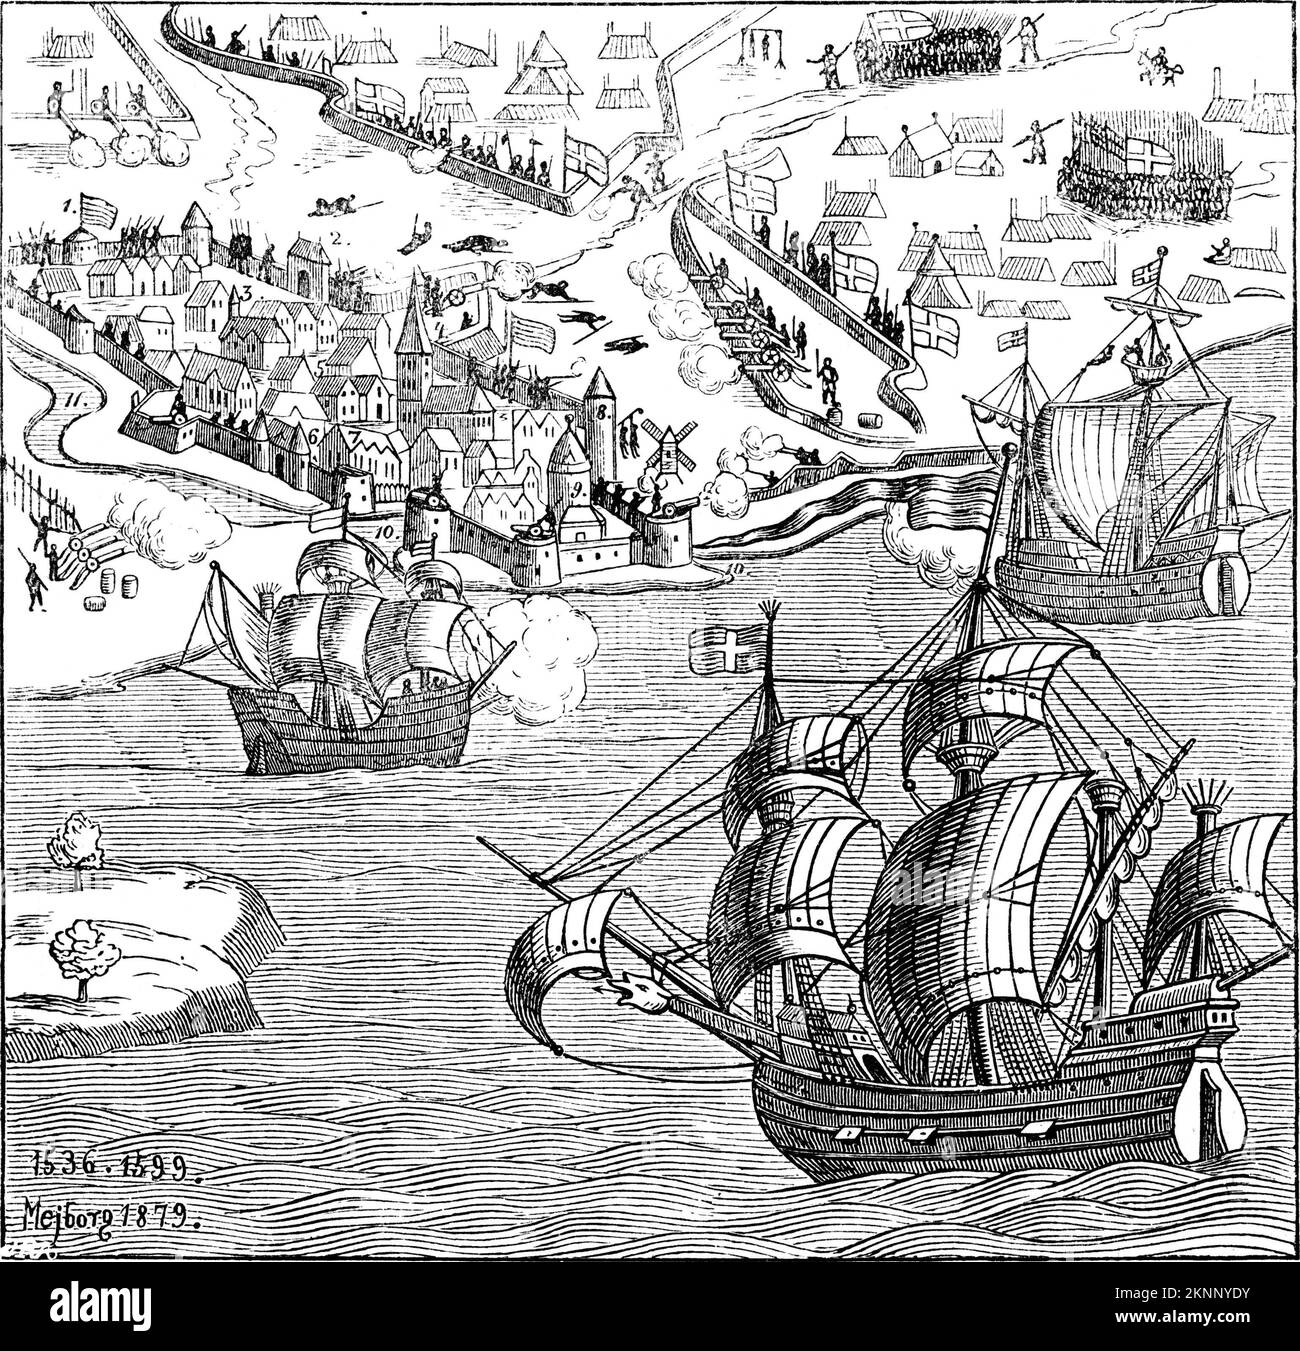 Siège de Copenhague 1535-1536 pendant la querelle du Comte, une période d'instabilité danoise qui façonnerait l'enfance de Frédéric. Fait partie des guerres européennes de religion et de la réforme protestante Banque D'Images